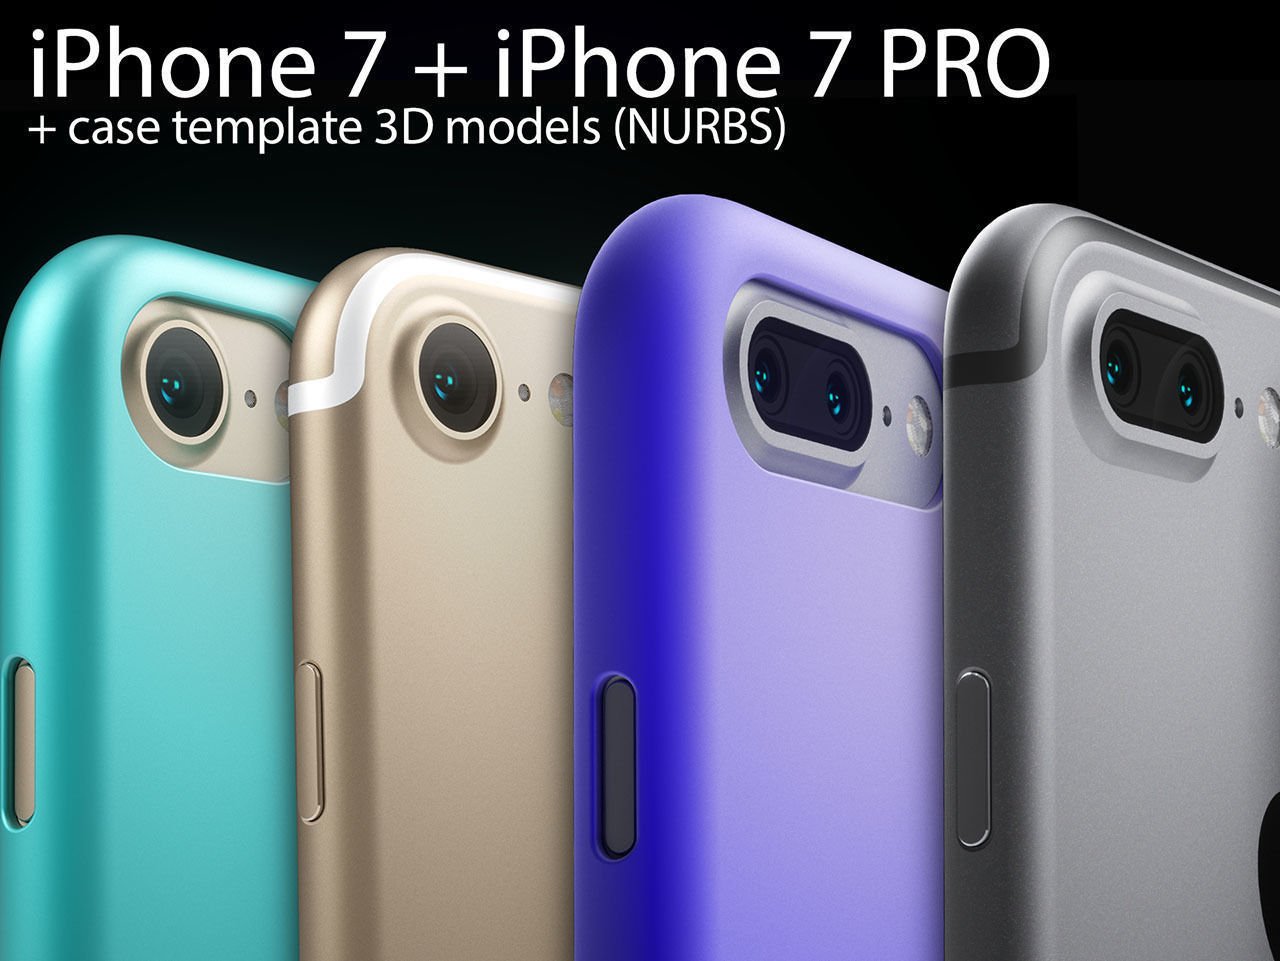 Sólo habrá dos modelos de iPhone 7 y no tres como se rumoreaba